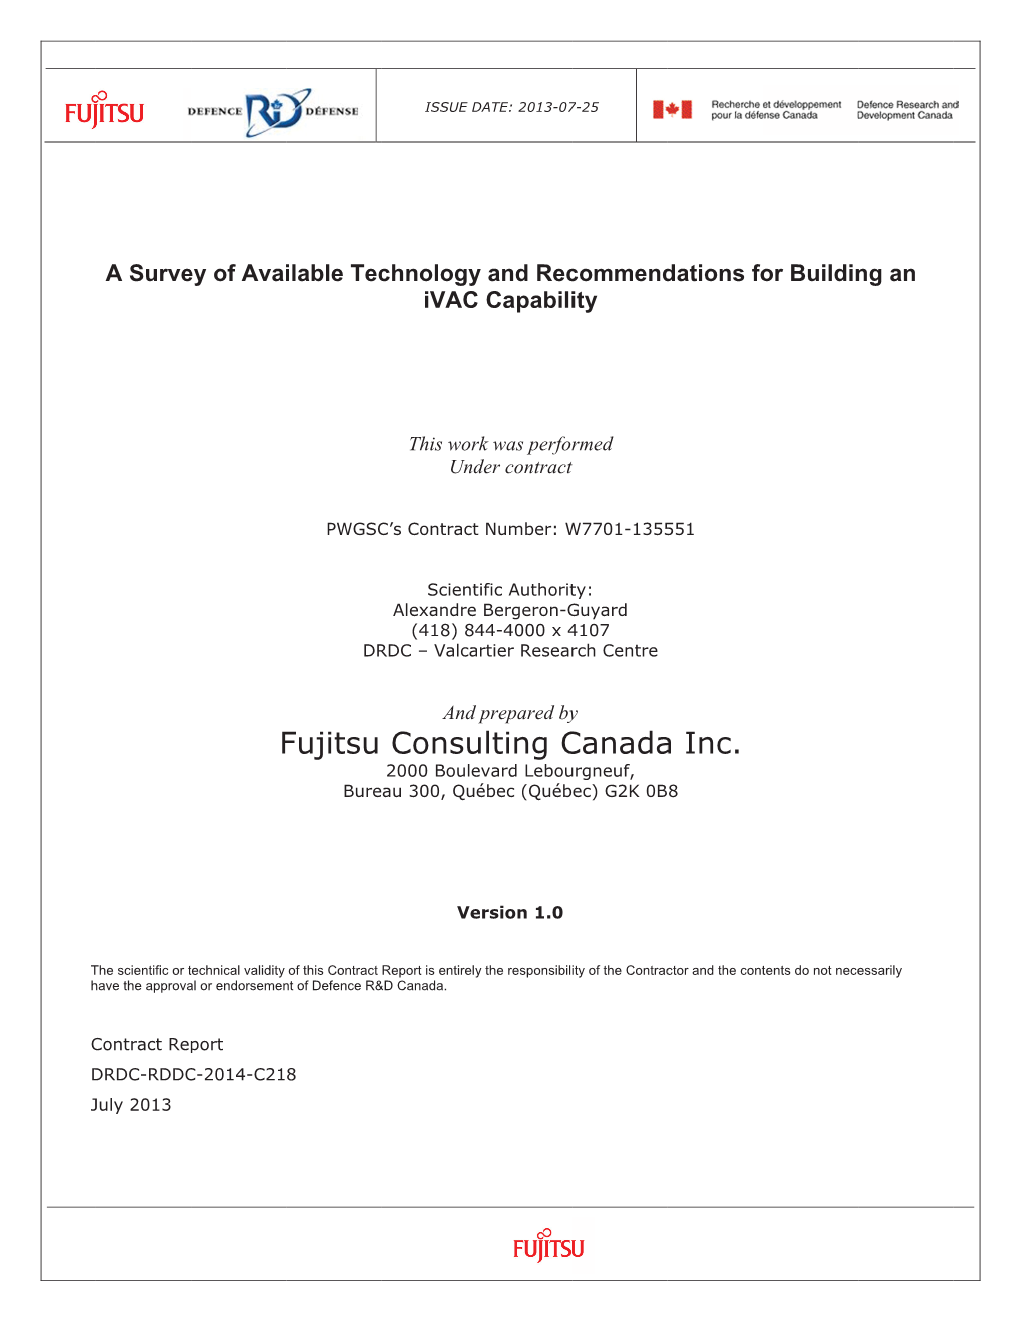 F Fujitsu Consu Ulting C Canada a Inc